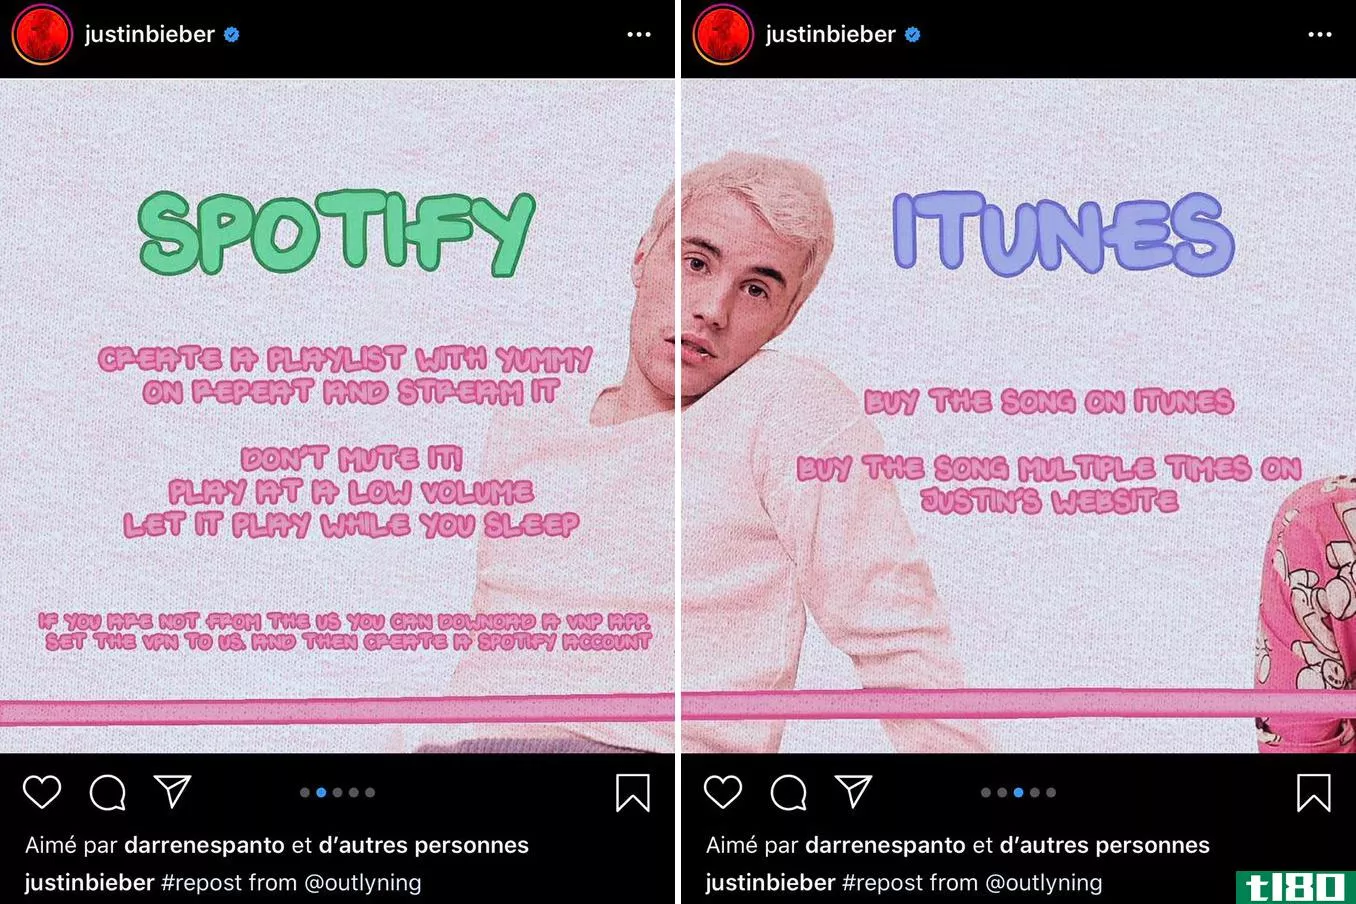 贾斯汀·比伯告诉粉丝们去游戏spotify和itunes给他一首排行榜上的歌曲